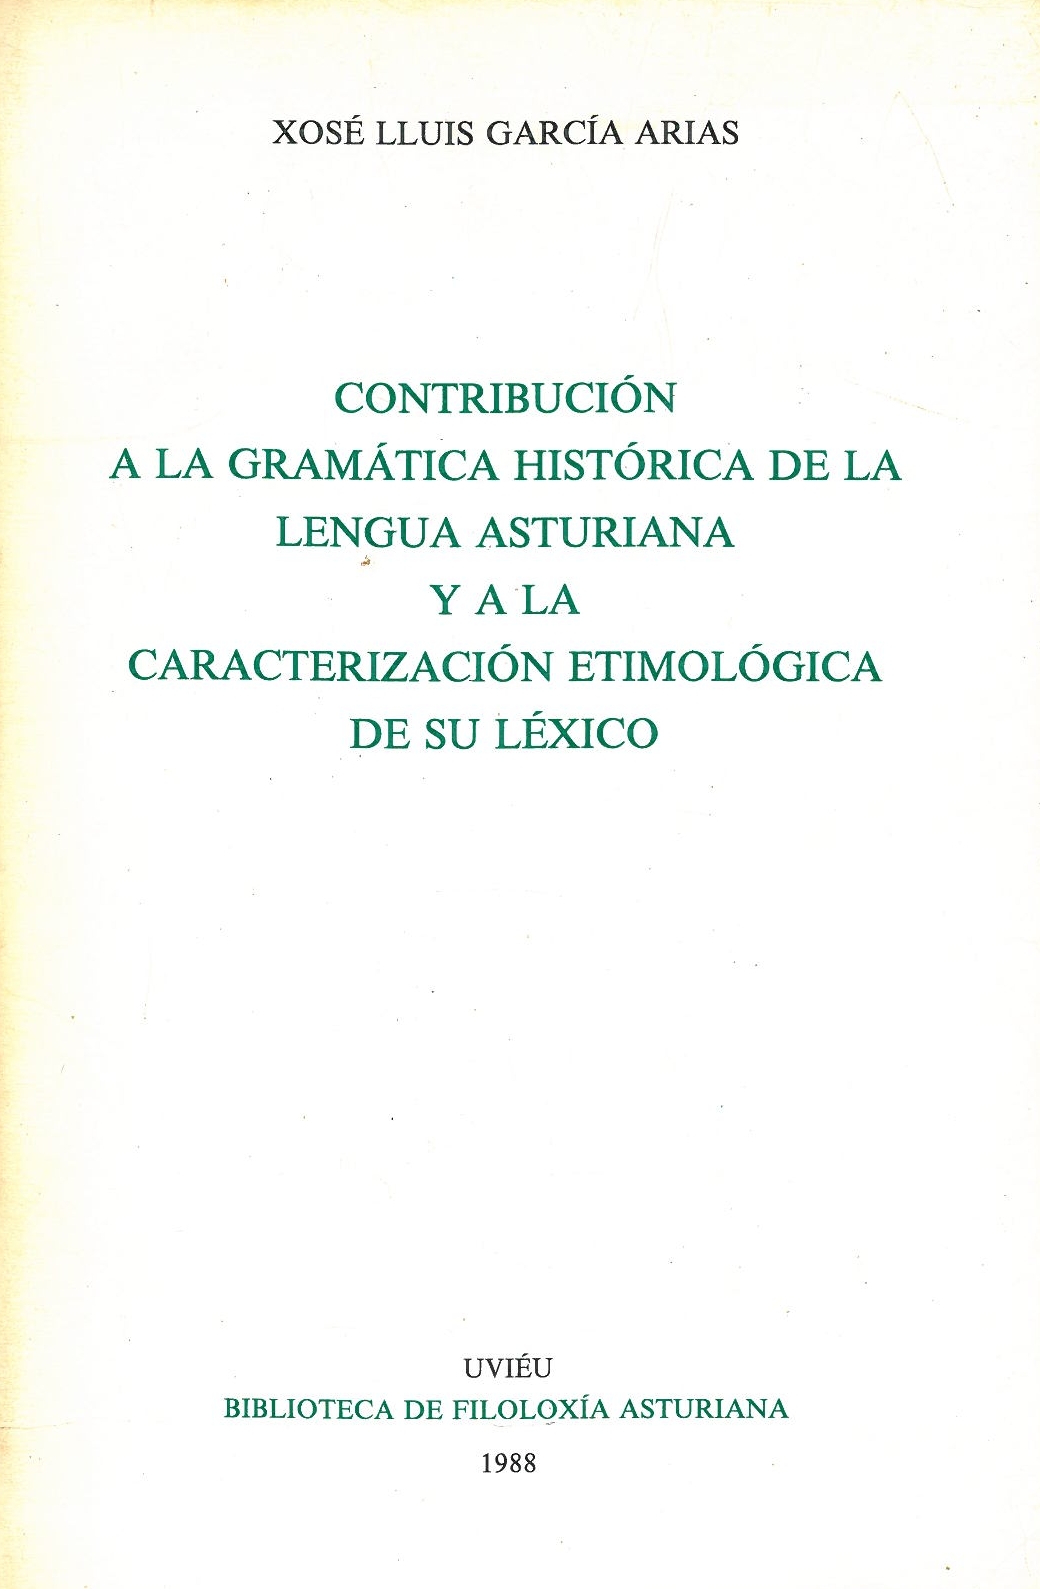 CONTRIBUCIÓN A LA GRAMÁTICA HISTÓRICA DE LA LENGUA ASTURIANA Y A LA CARACTERIZACIÓN ETIMOLÓGICA DE SU LÉXICO (GAL12913408)